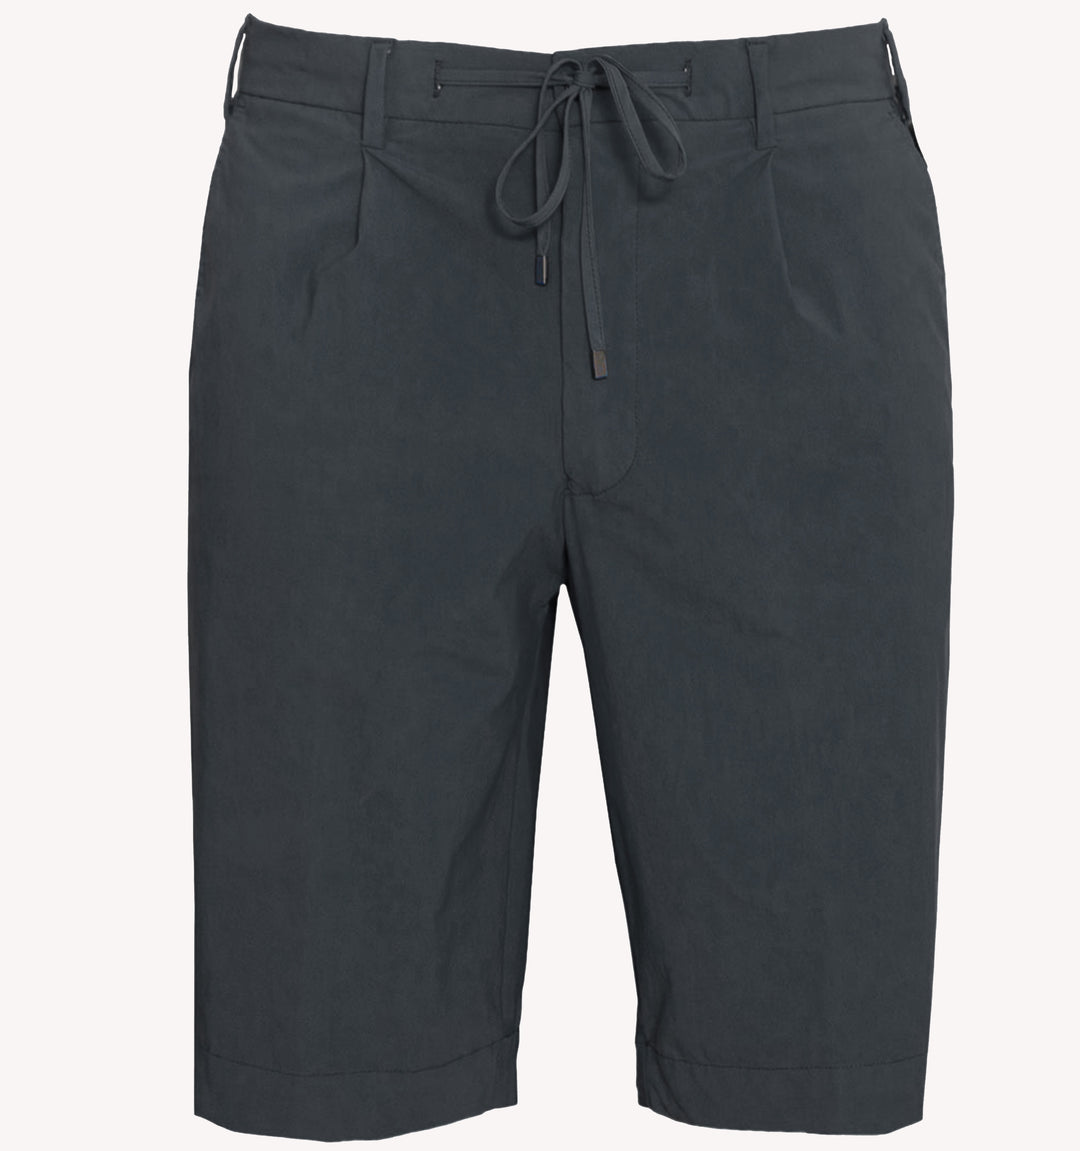 Germano Seersucker Shorts in Charcoal